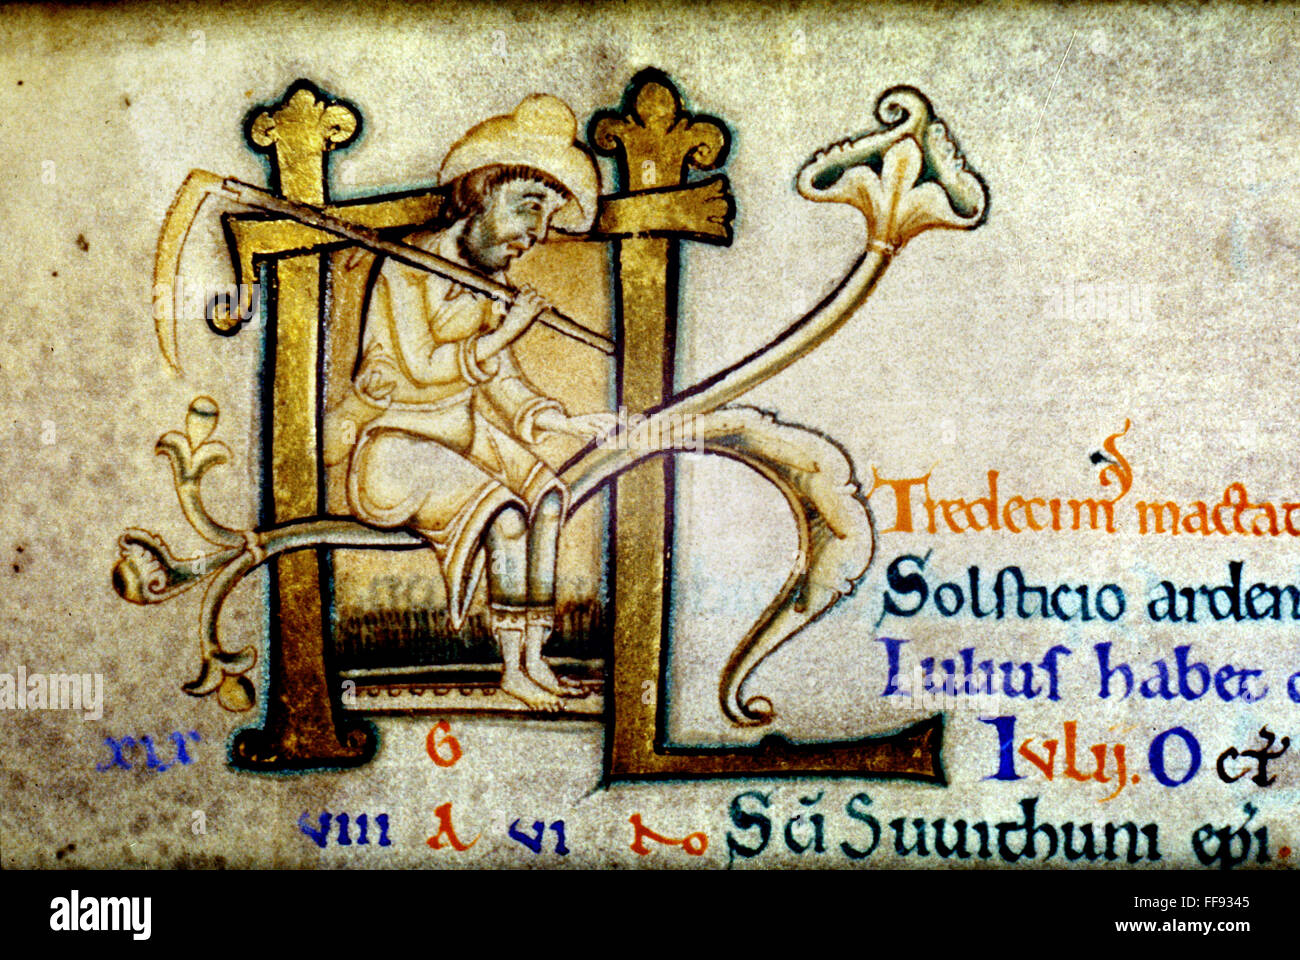 La cosecha, c1140. /NMan con una guadaña. Iluminación manuscrita en inglés. Foto de stock